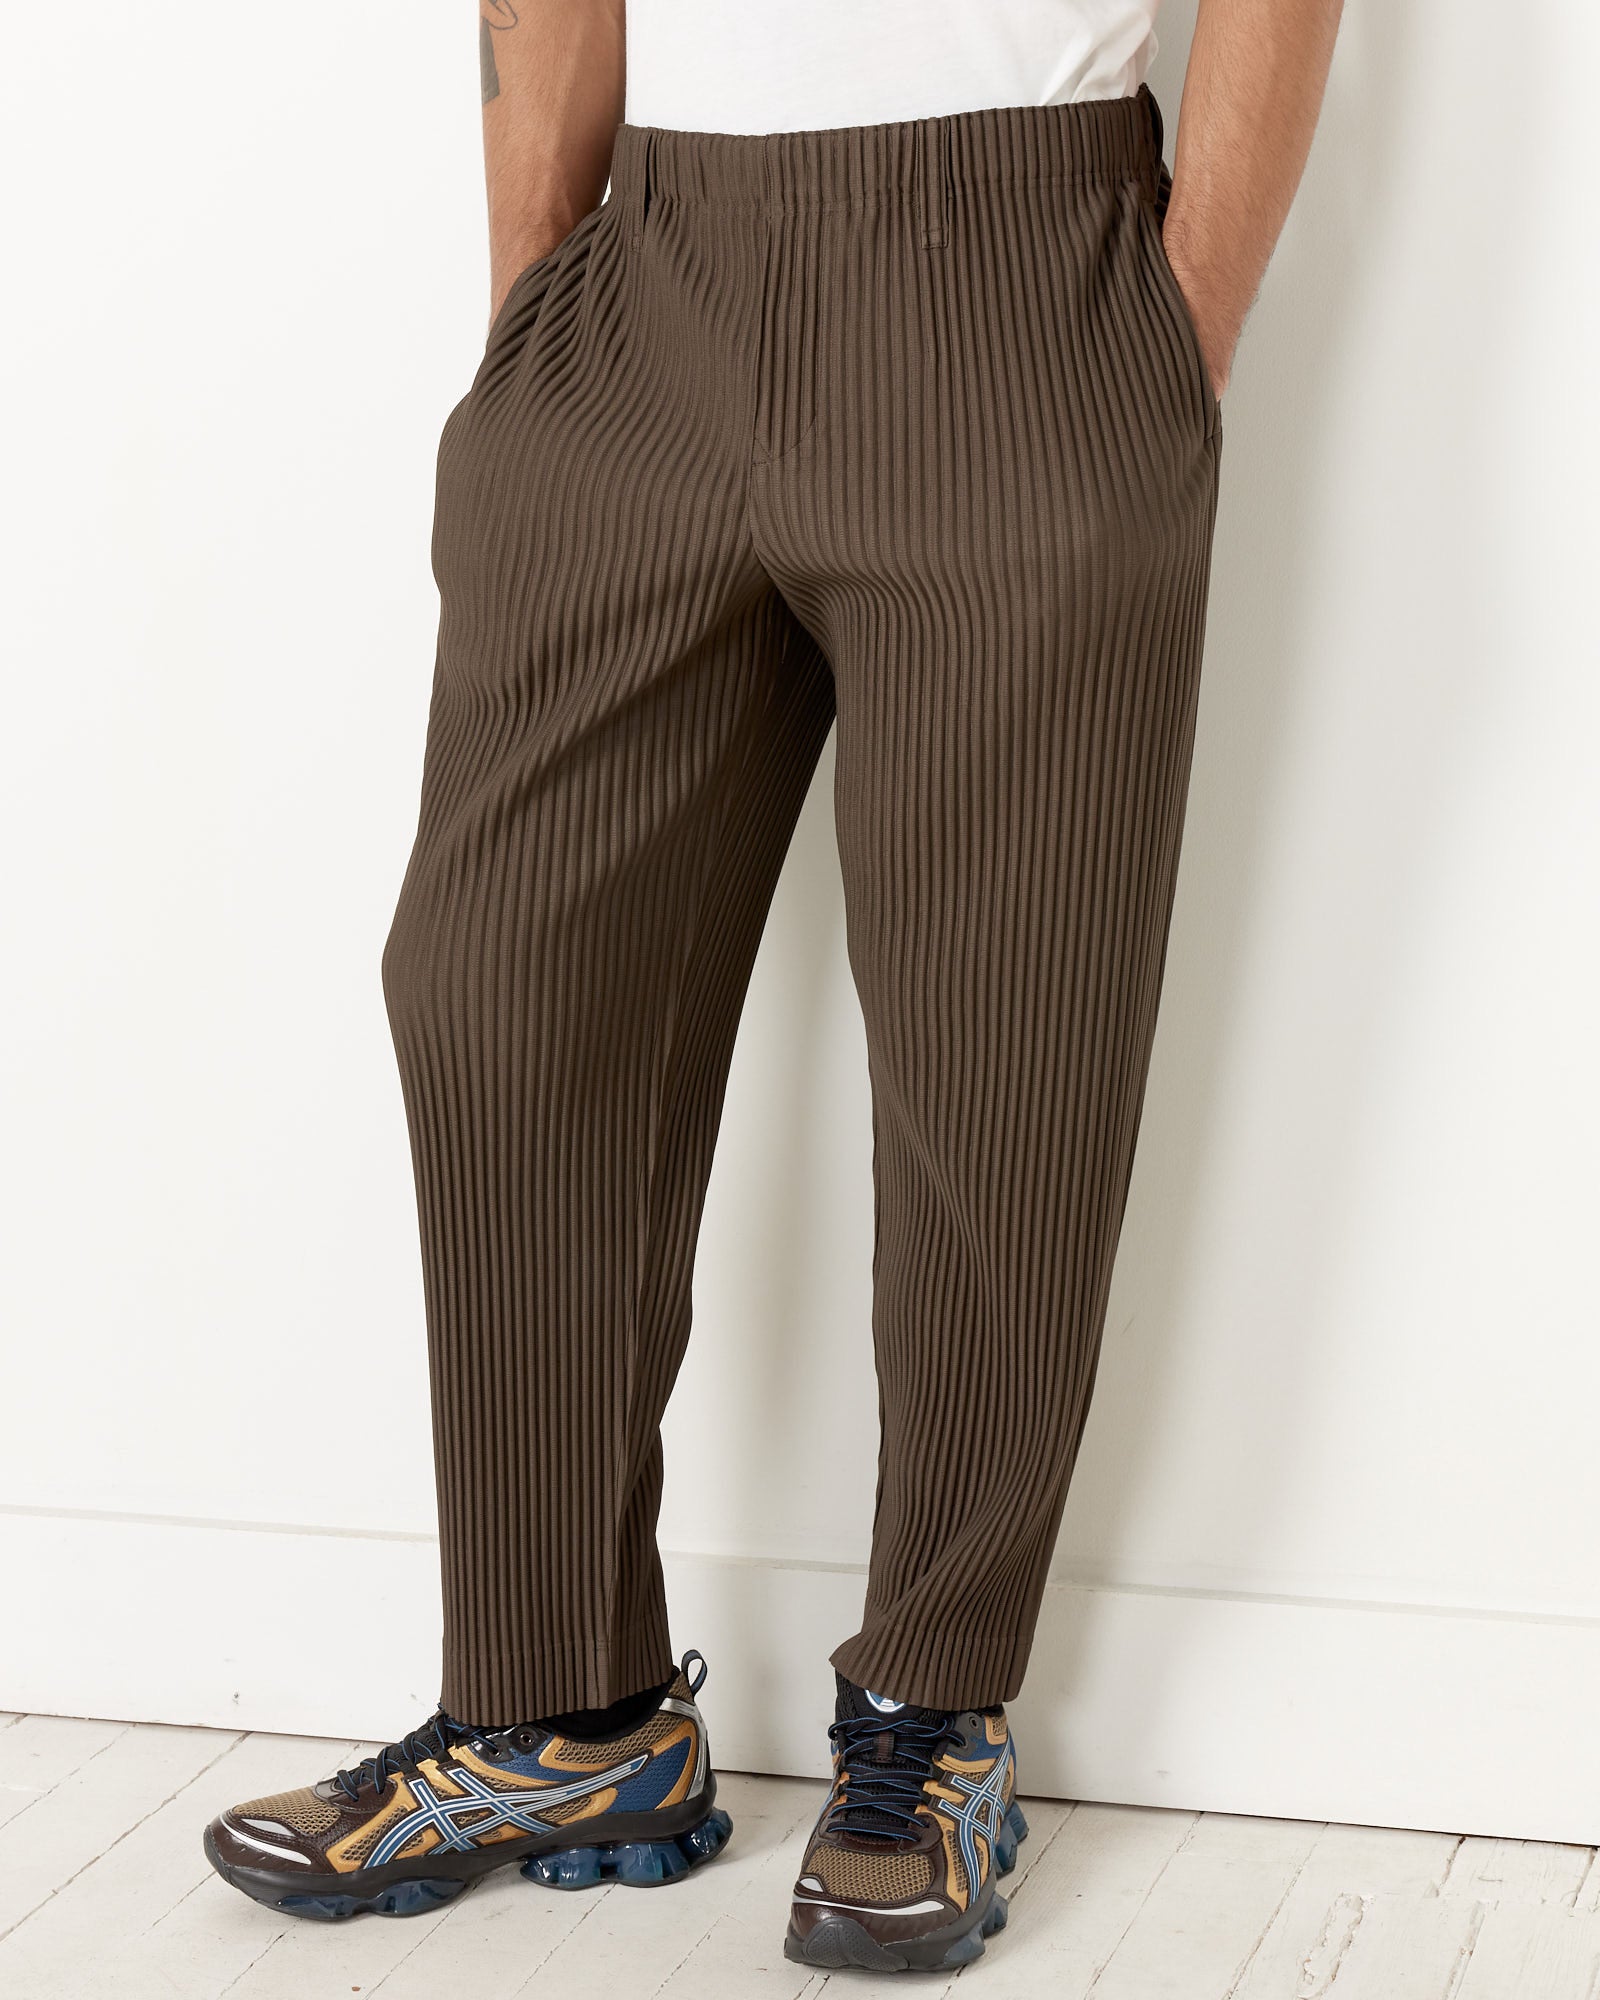 Tailored Pleats 1 Pant in Dark Khaki